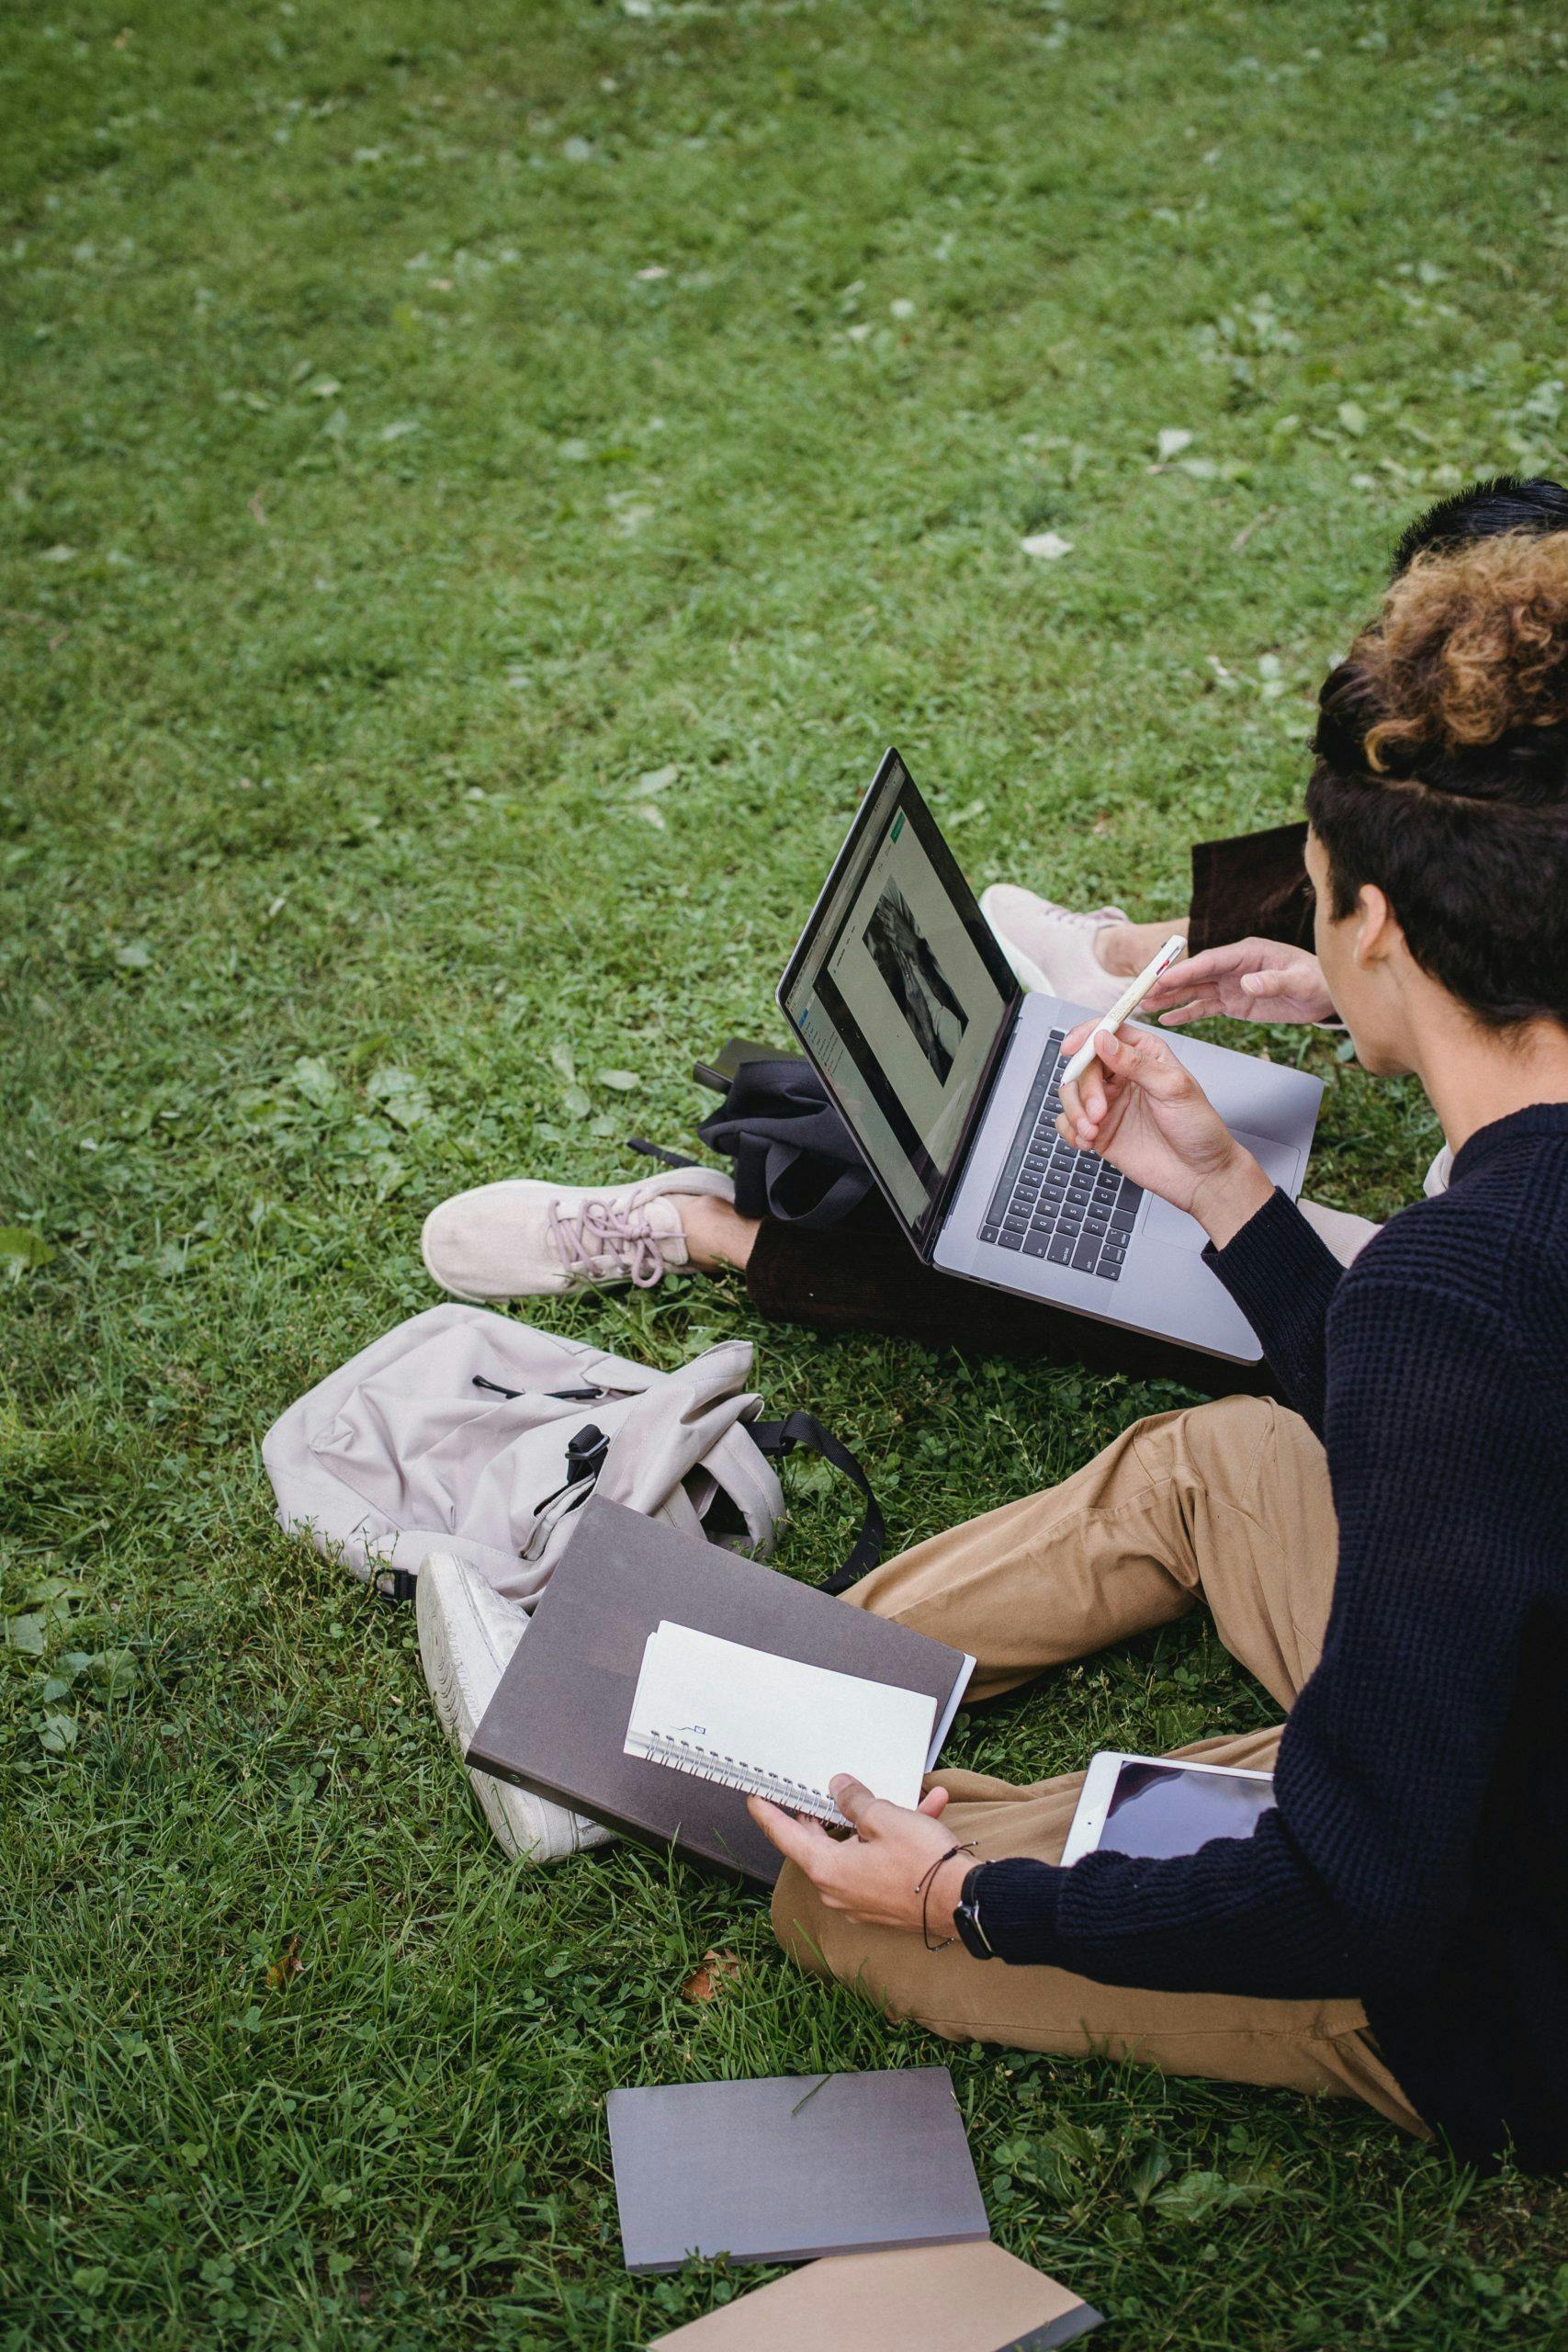 Personer som sitter i gräset med dator och anteckningsblock.